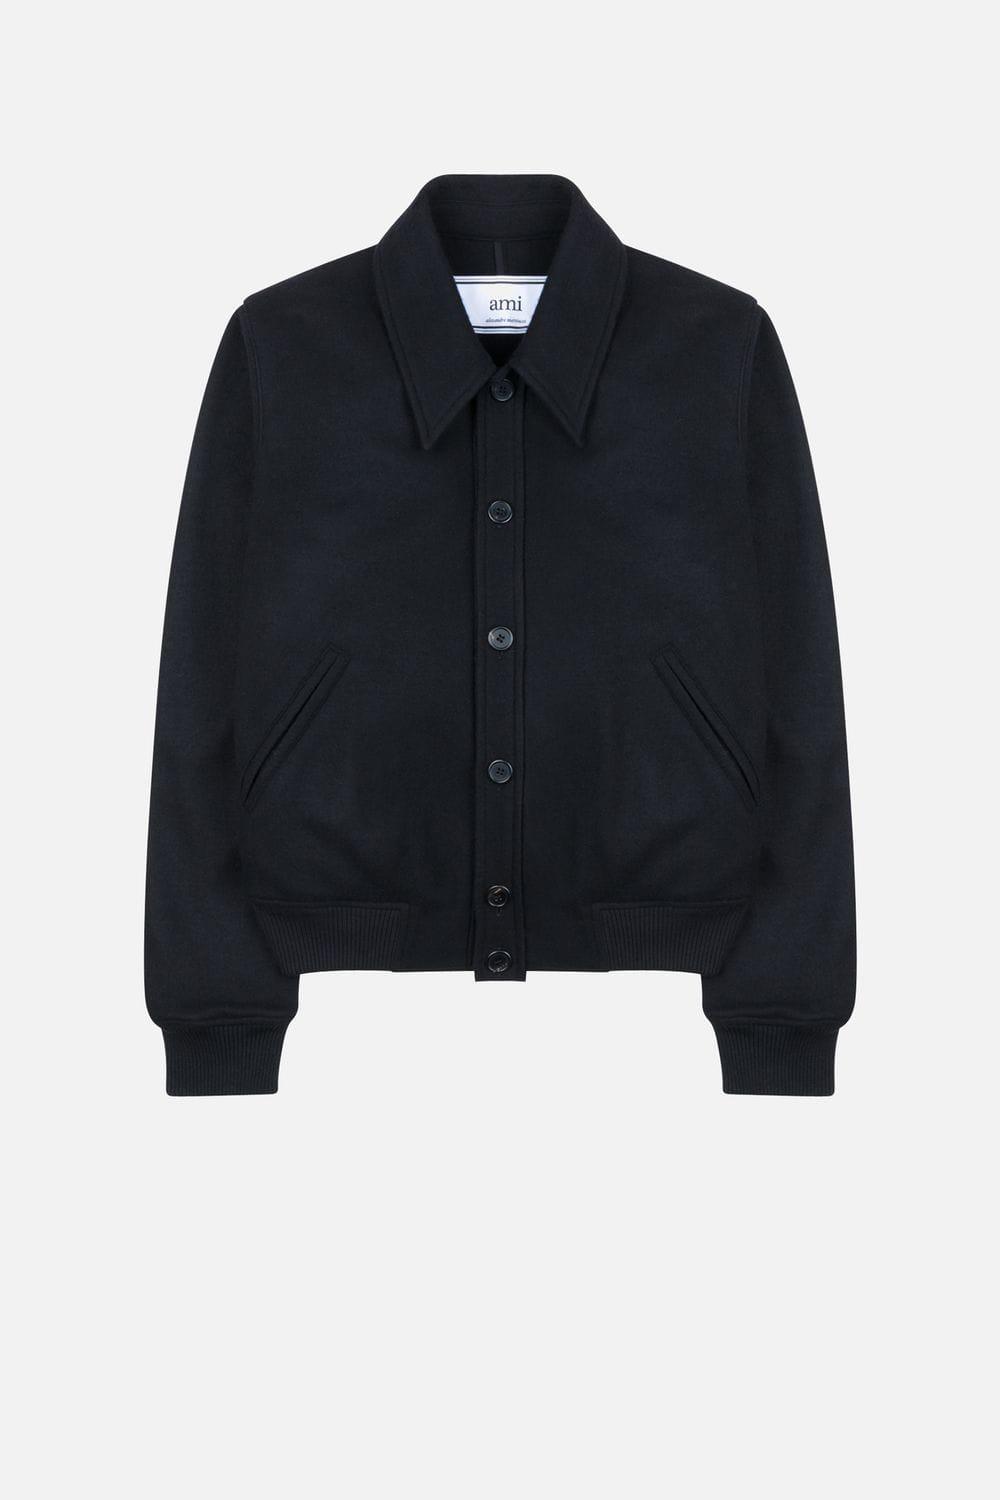 AMI Wool Jersey Jacket in Black for Men - Lyst